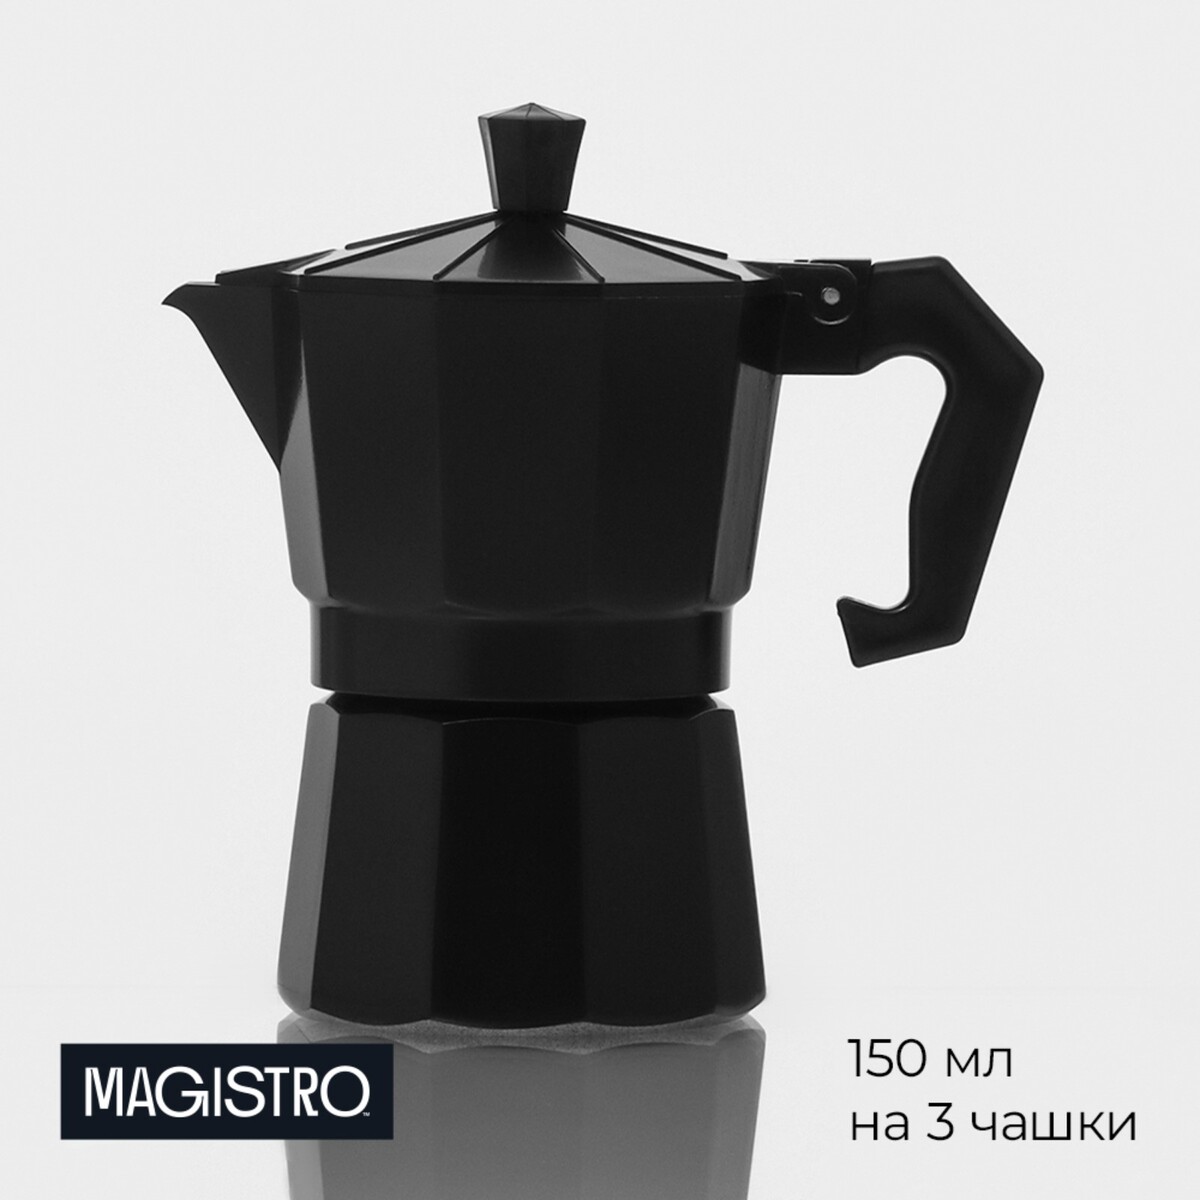 Кофеварка гейзерная magistro alum black, на 3 чашки, 150 мл, цвет черный